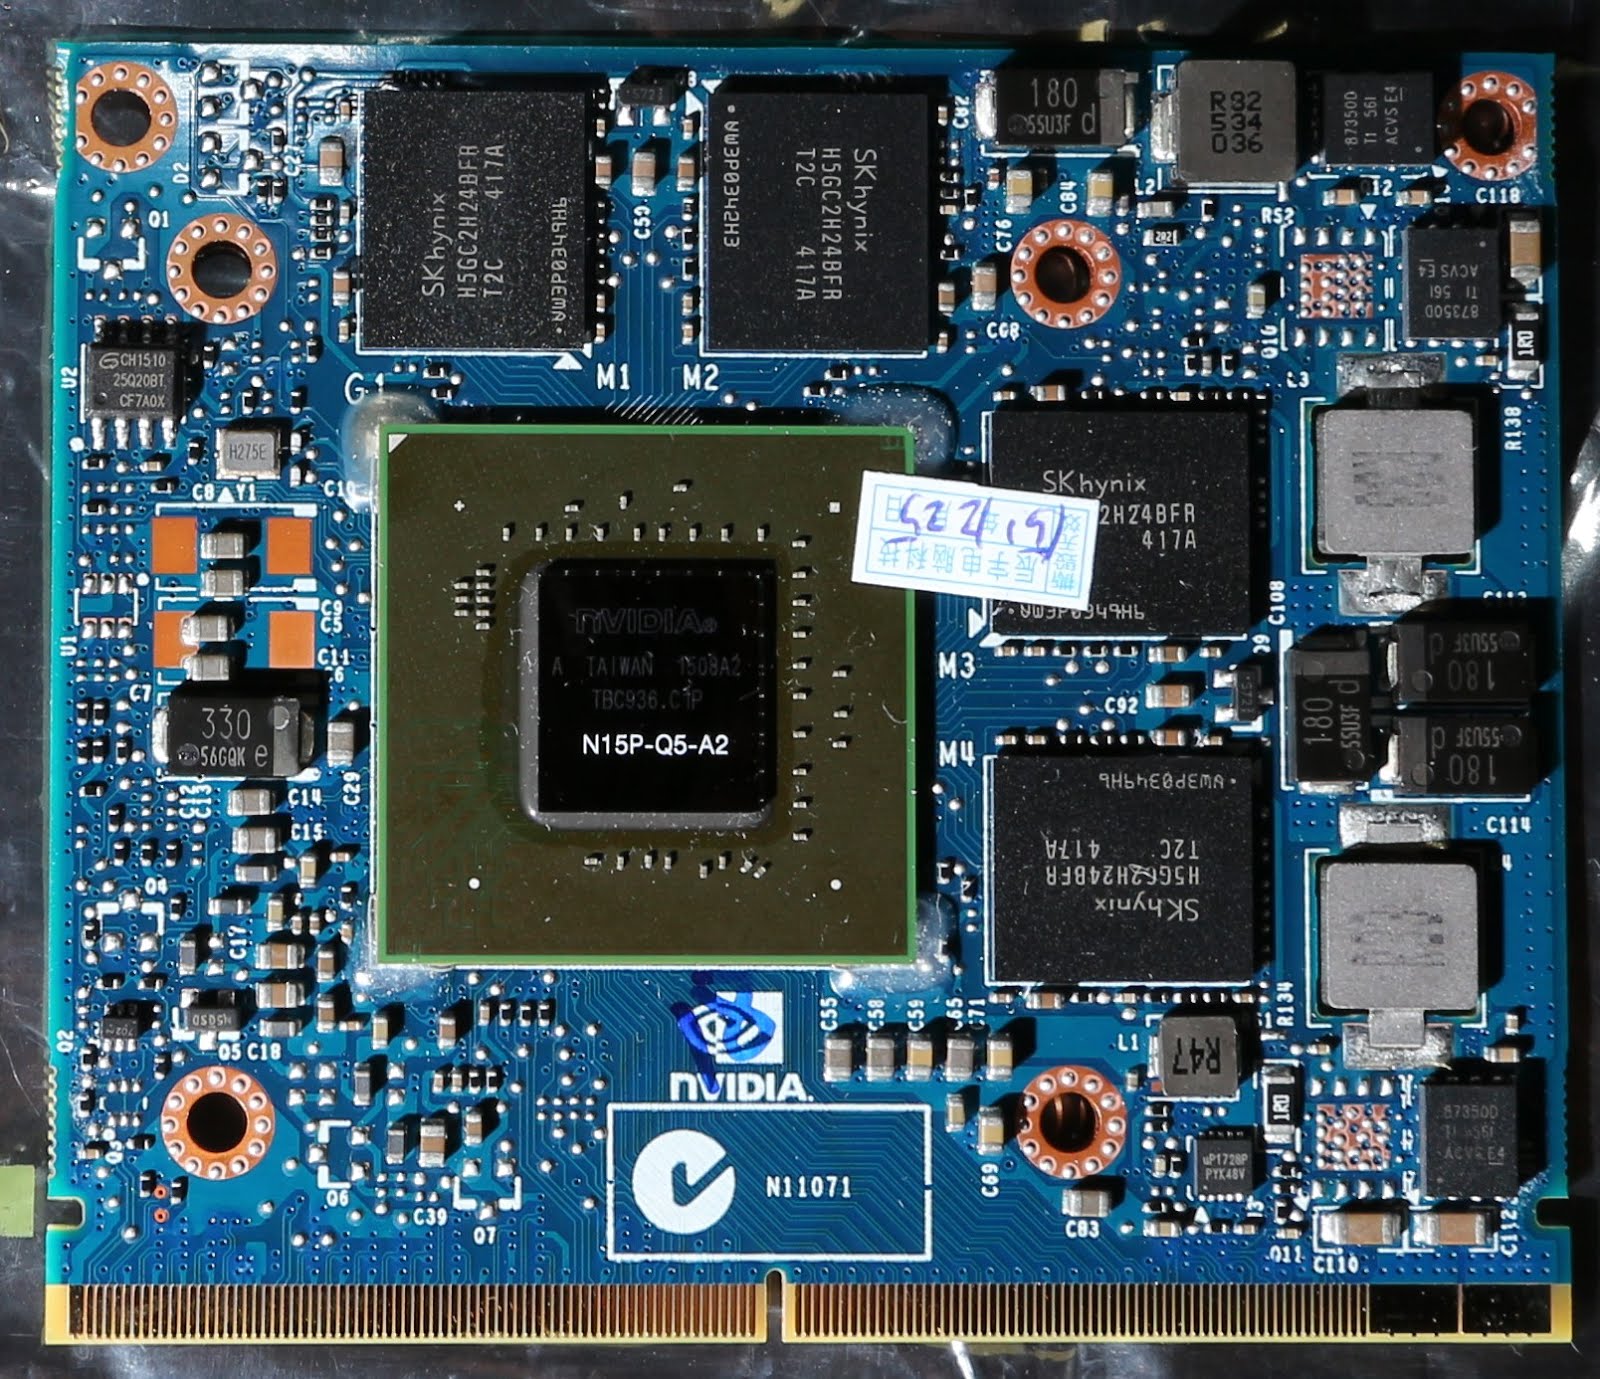 8570w blog: 【豆知識】ノート PC に GPU を増設できる 